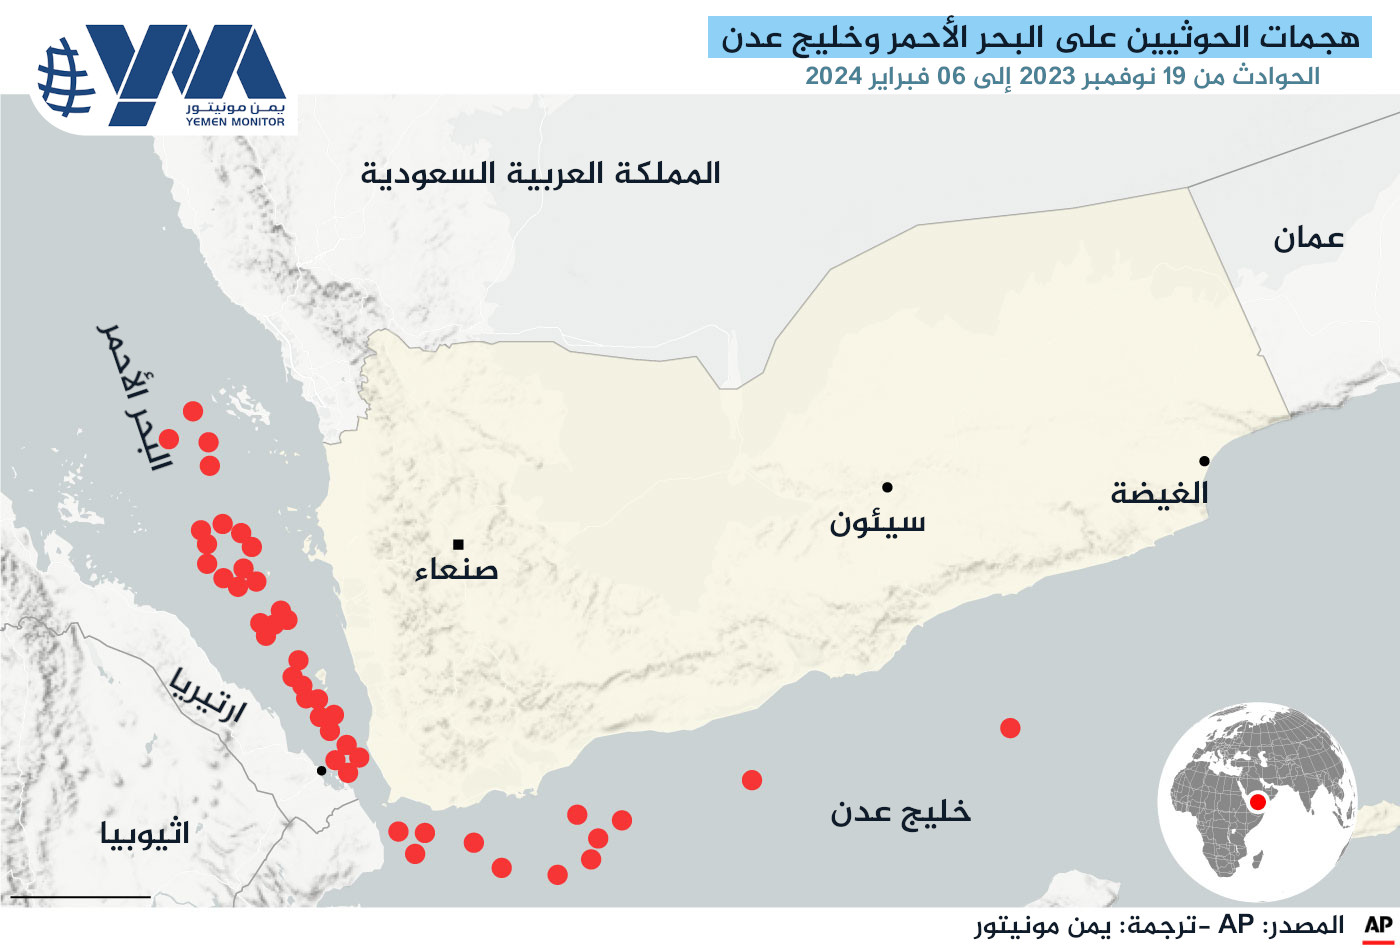 أسلحة جديدة وترسانة كبيرة.. هجمات الحوثيين في البحر الأحمر تتصاعد وتزداد حدة